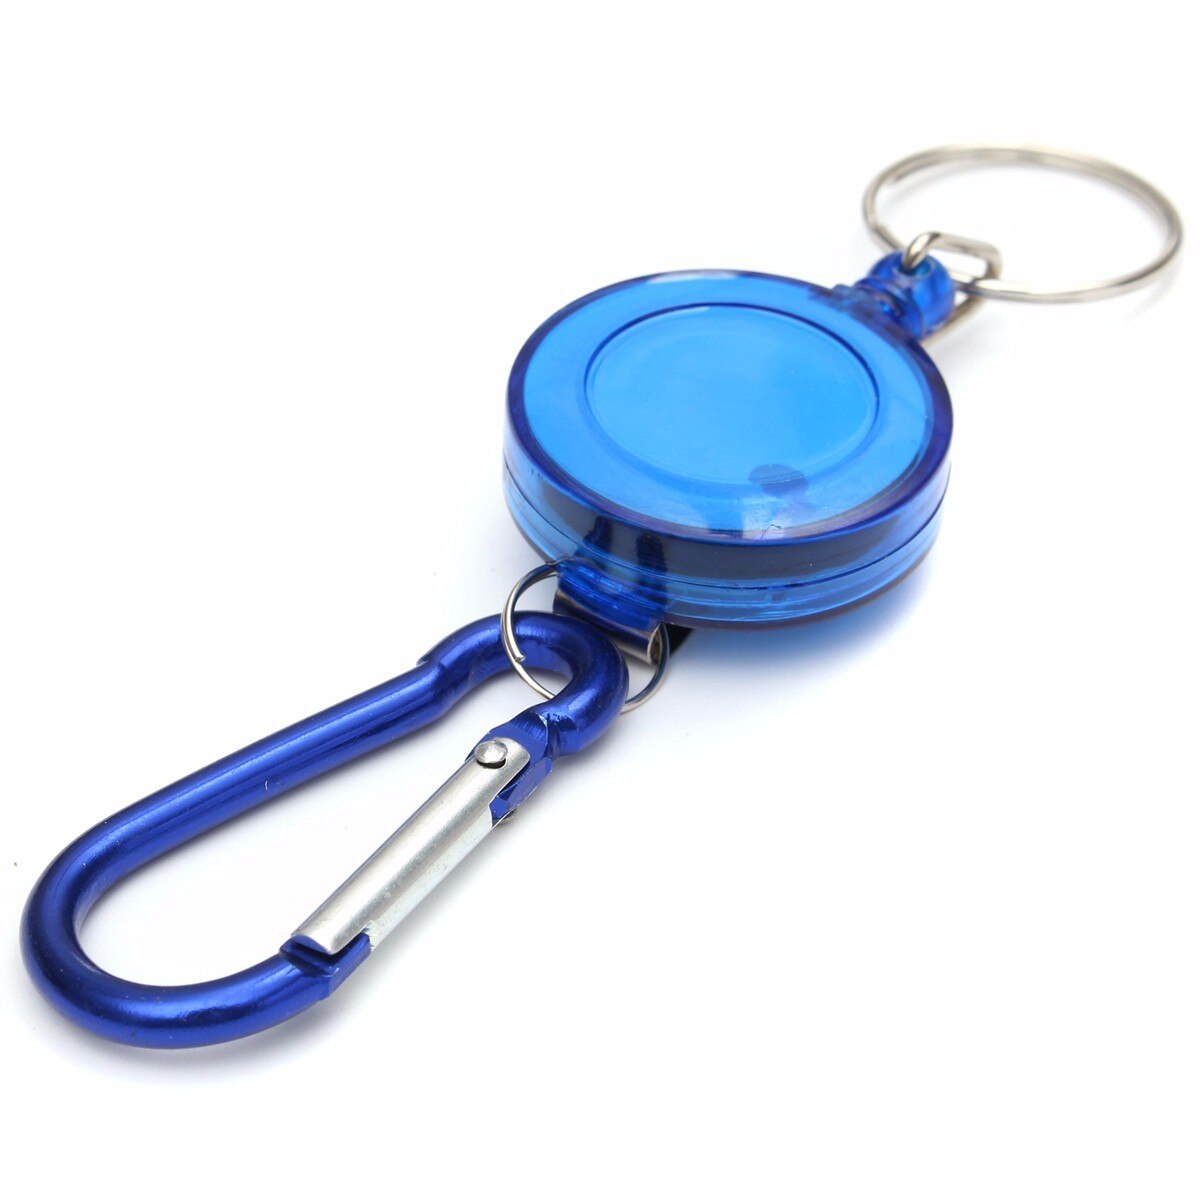 Etya sød nøgleholder bil nøglering nøgle tegnebog multifunktionelt kort nøglering taske lomme ring: Blå